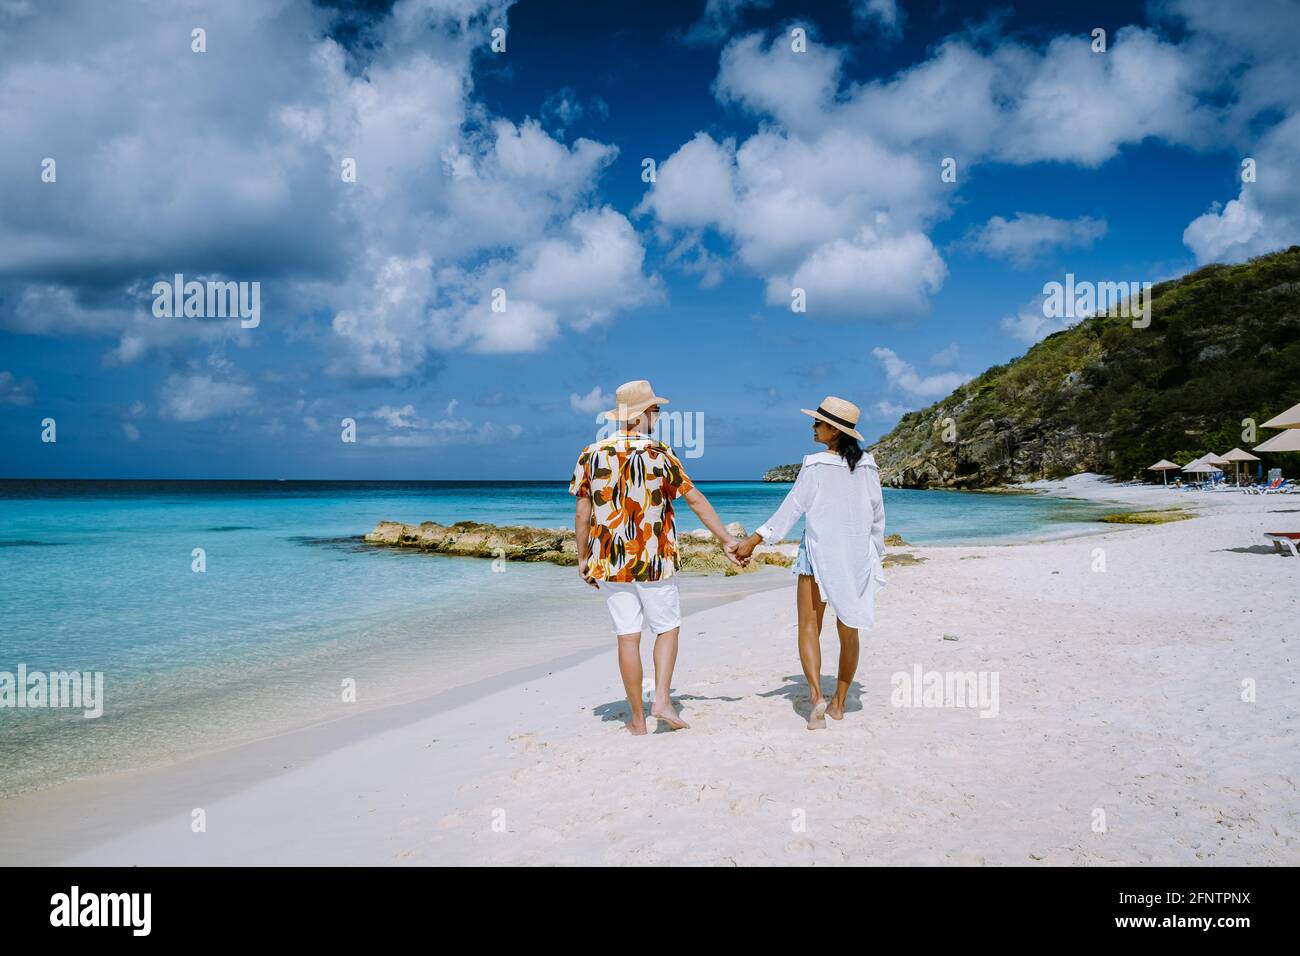 CAS Abou Beach Curacao sull'isola caraibica di Curacao, Playa CAS Abou a Curacao Caraibi tropicale spiaggia bianca con uomini e donne blu oceano sulla spiaggia, coppia di mezza età in vacanza Foto Stock